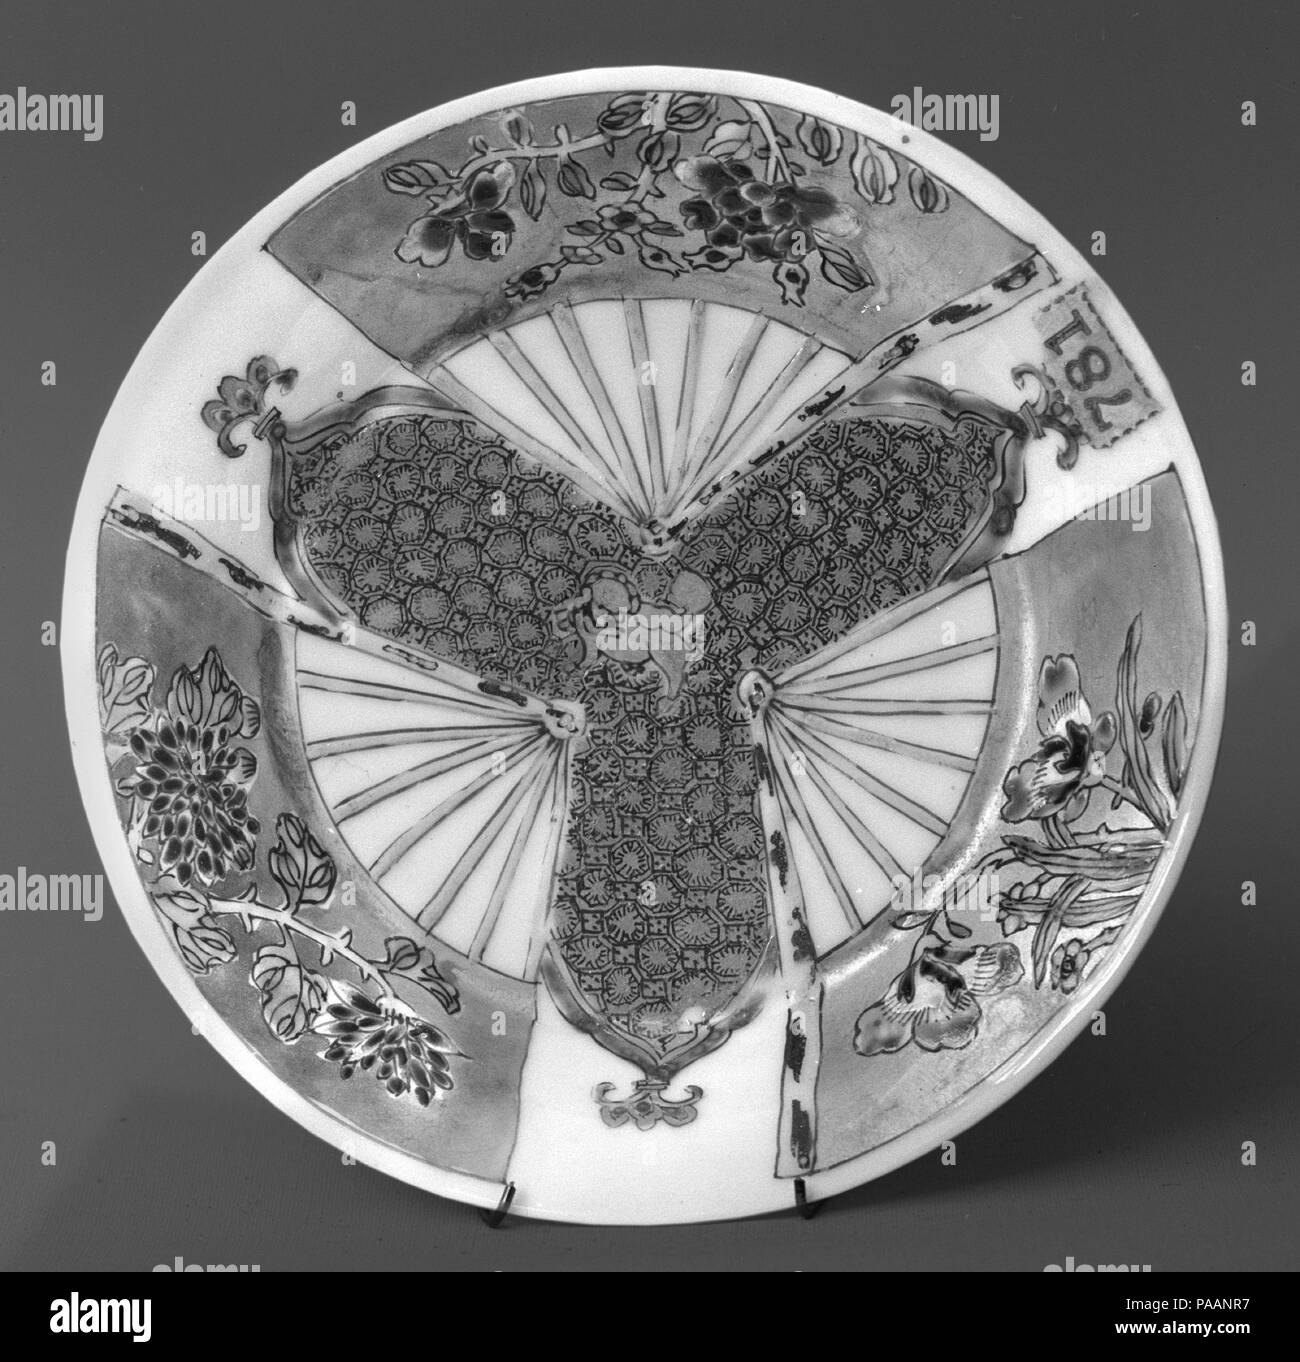 Piattino. Cultura: la Cina. Dimensioni: diam. 4 3/8 in. (11,1 cm). Data: XVIII secolo. Museo: Metropolitan Museum of Art di New York, Stati Uniti d'America. Foto Stock